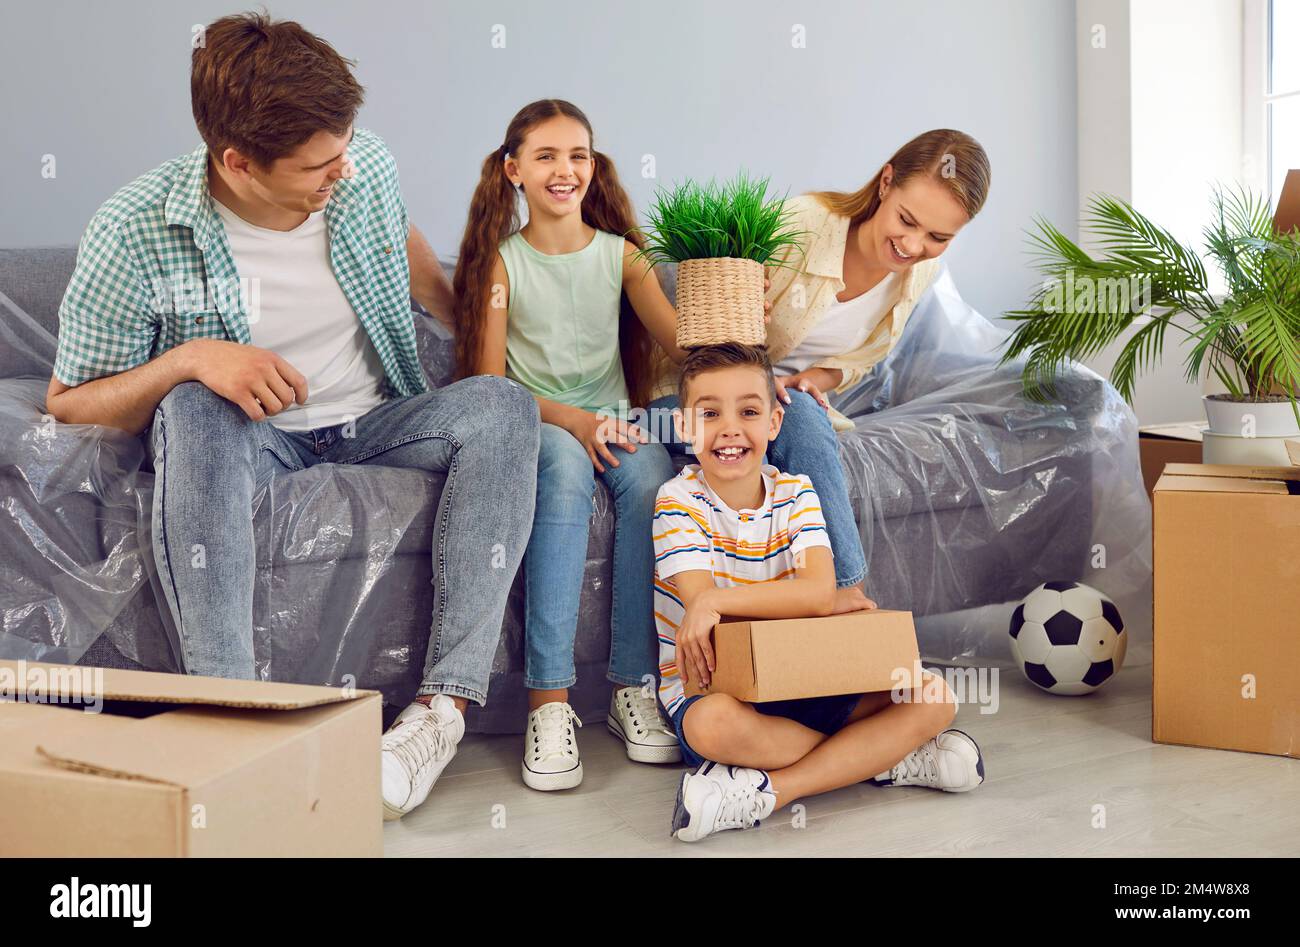 Glückliche Familie mit zwei Kindern, die auf dem Sofa sitzen und sich in einem neuen, modernen Apartmenthaus zwischen Boxen umziehen. Stockfoto